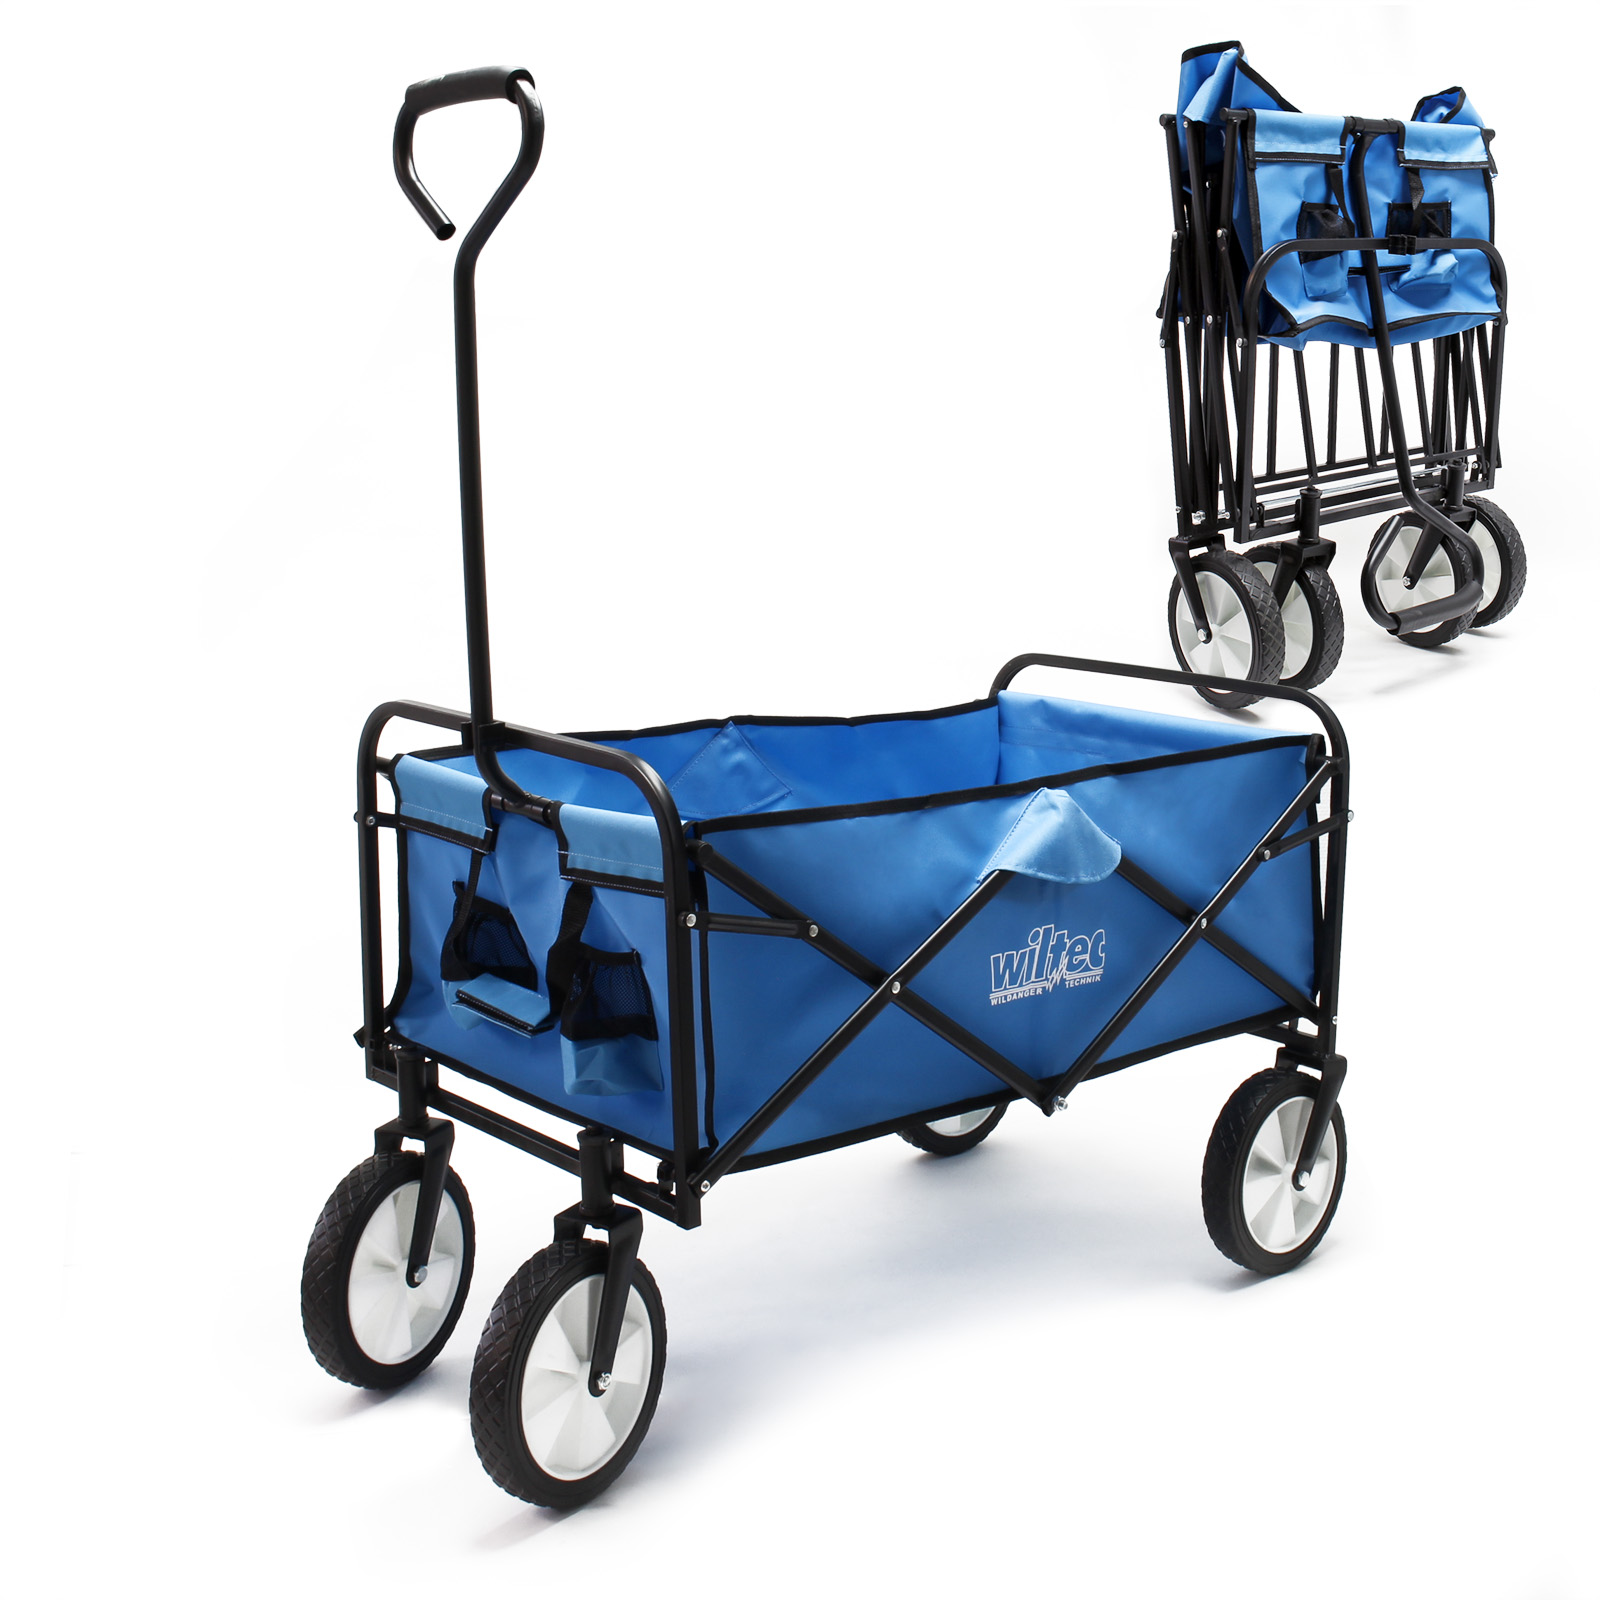 Chariot de jardin Chariot de transport HEIDRUN, Pliable, avec Roues en  plastique extra-larges pour faciliter le transport, Sac de transport  compris, Capacité de charge maximale 80 kg acheter en ligne à bas